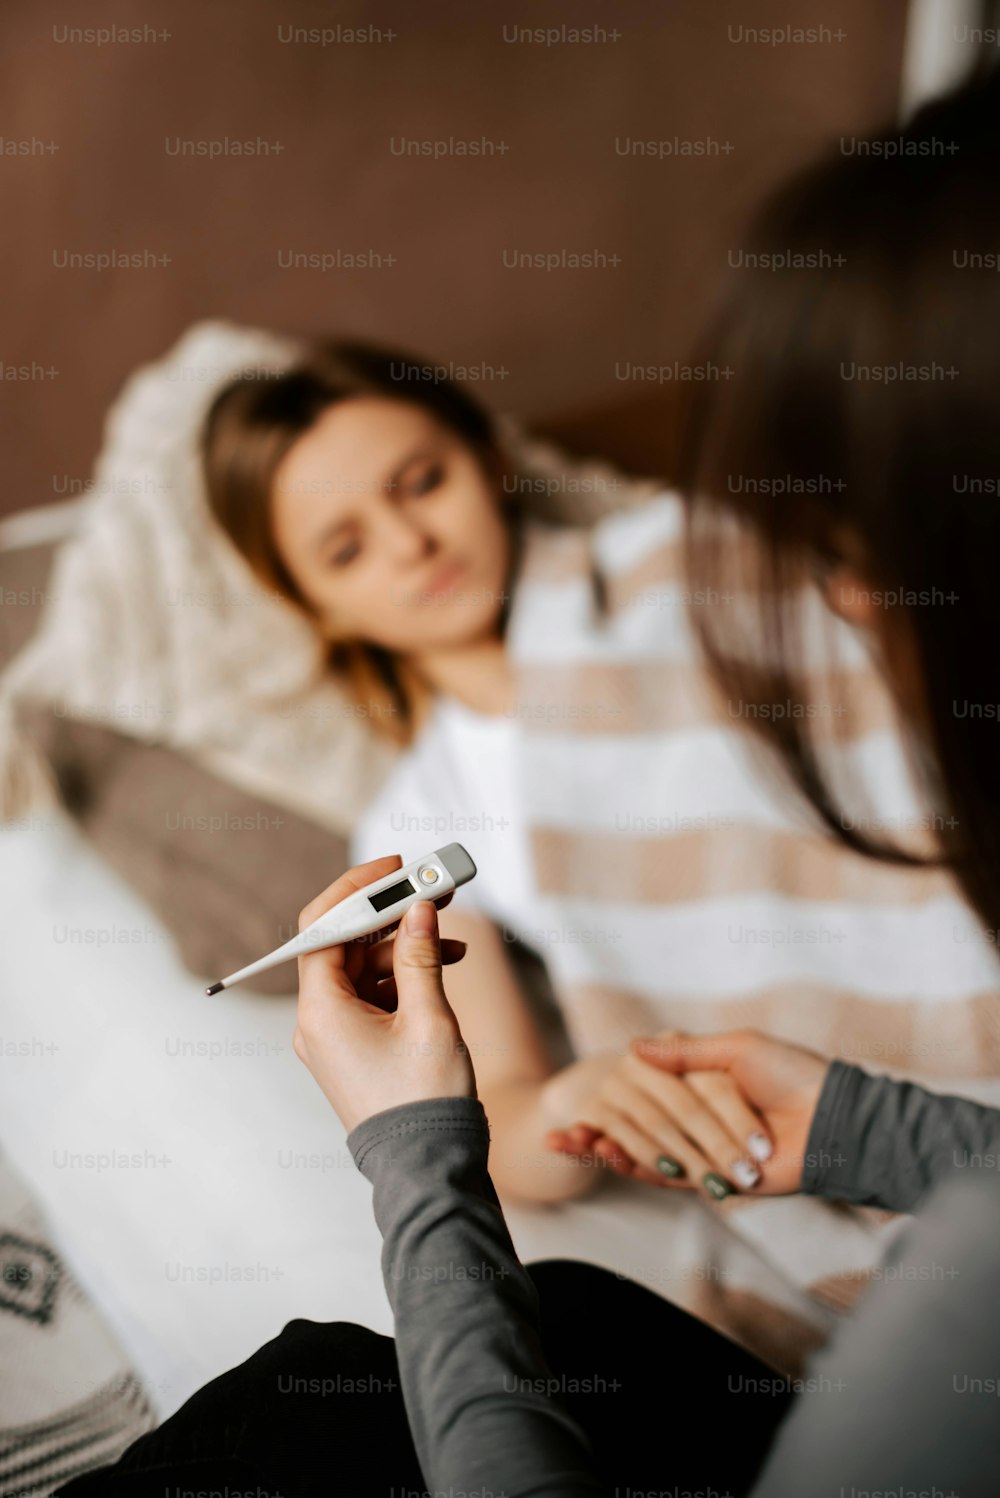 Eine Frau sitzt auf einem Bett und hält eine Fernbedienung in der Hand